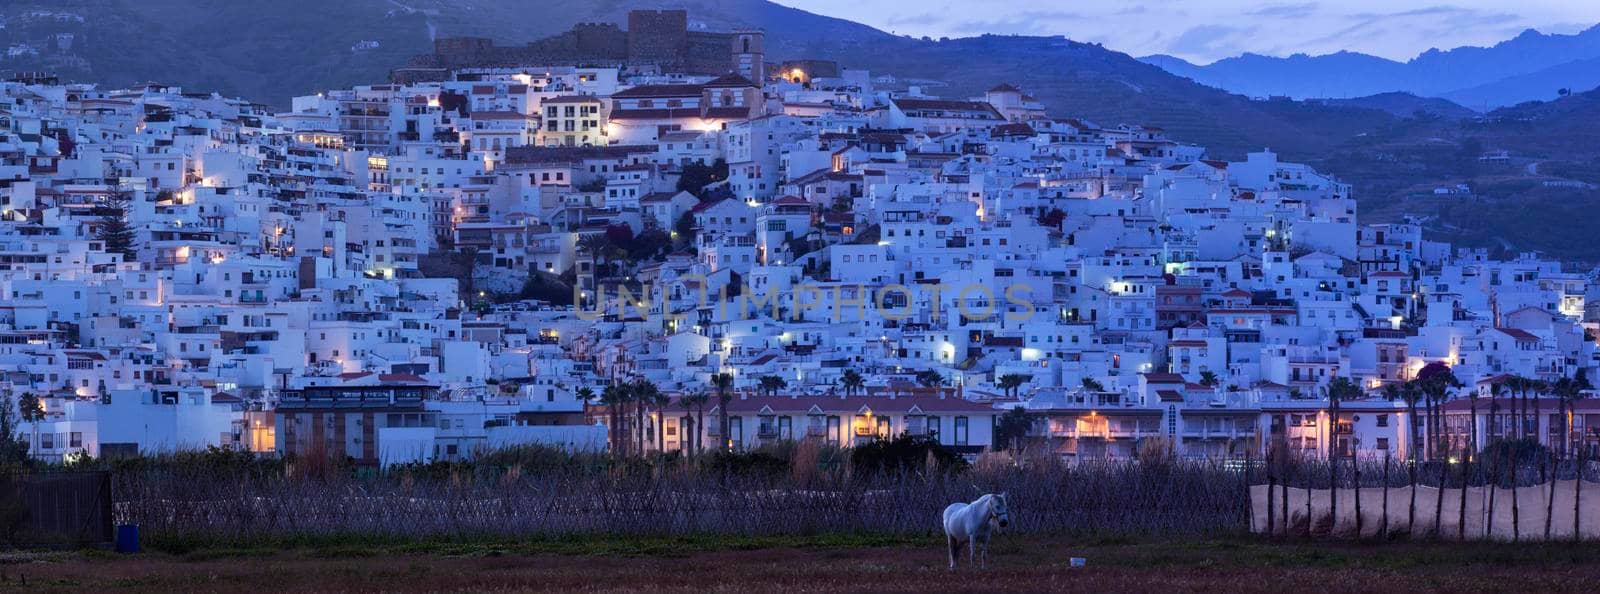 Panorama of Salobrena at evening. Salobrena, Andalusia, Spain.